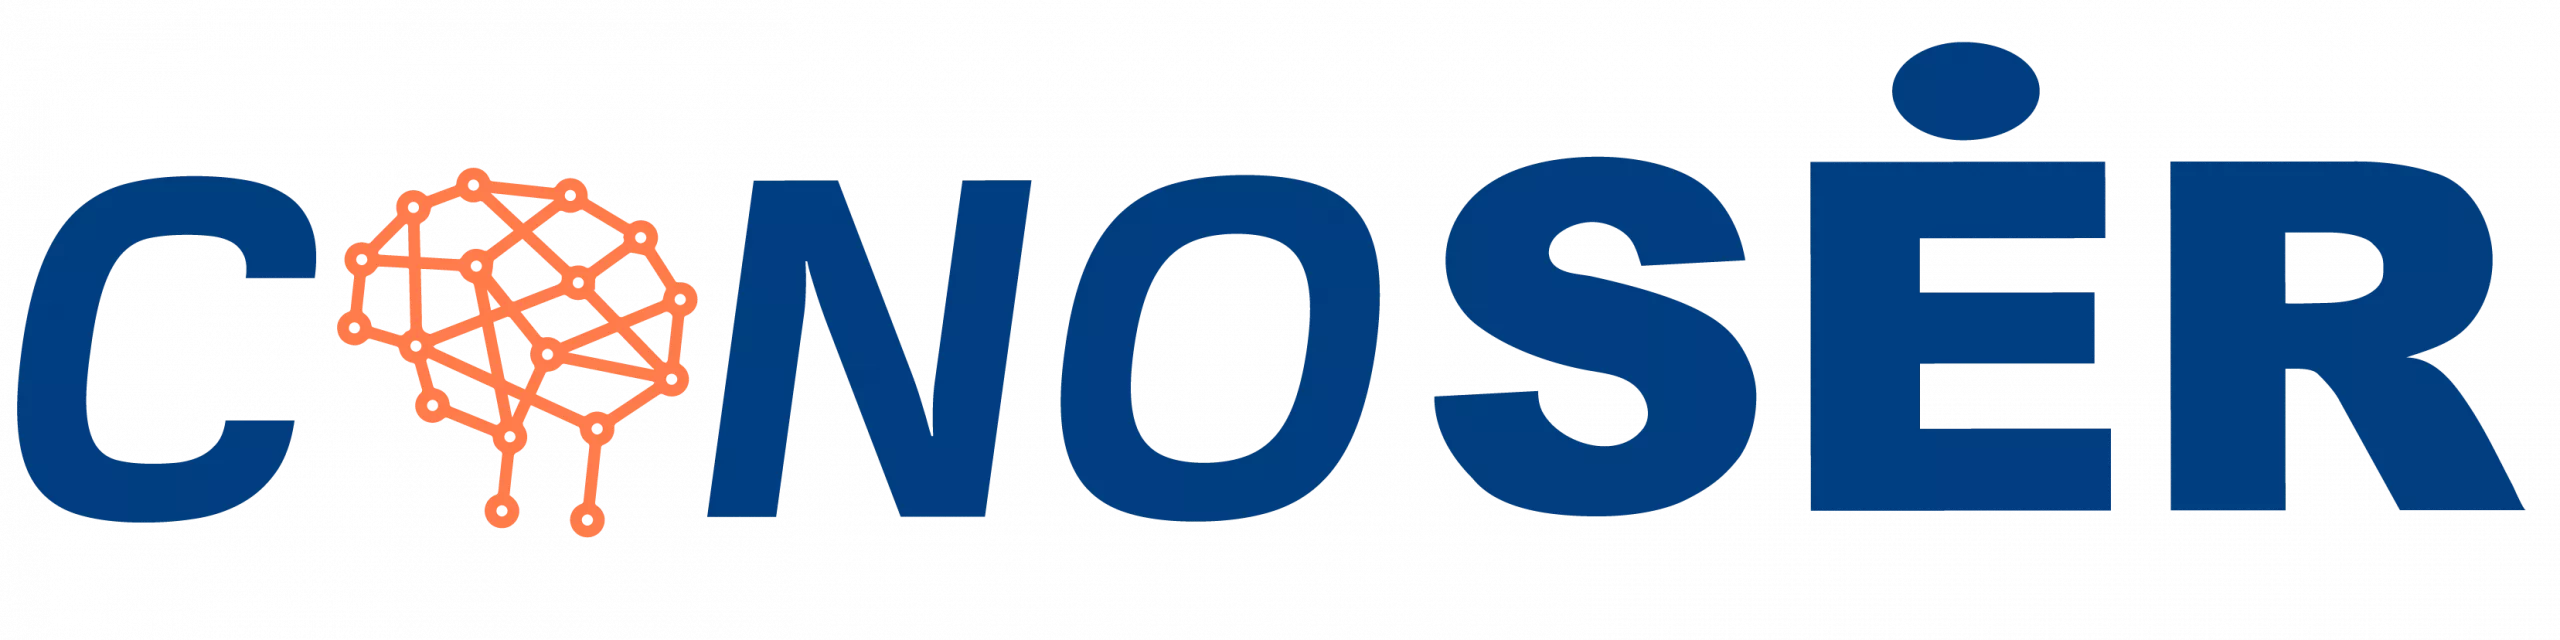 Logo-conoSER-02